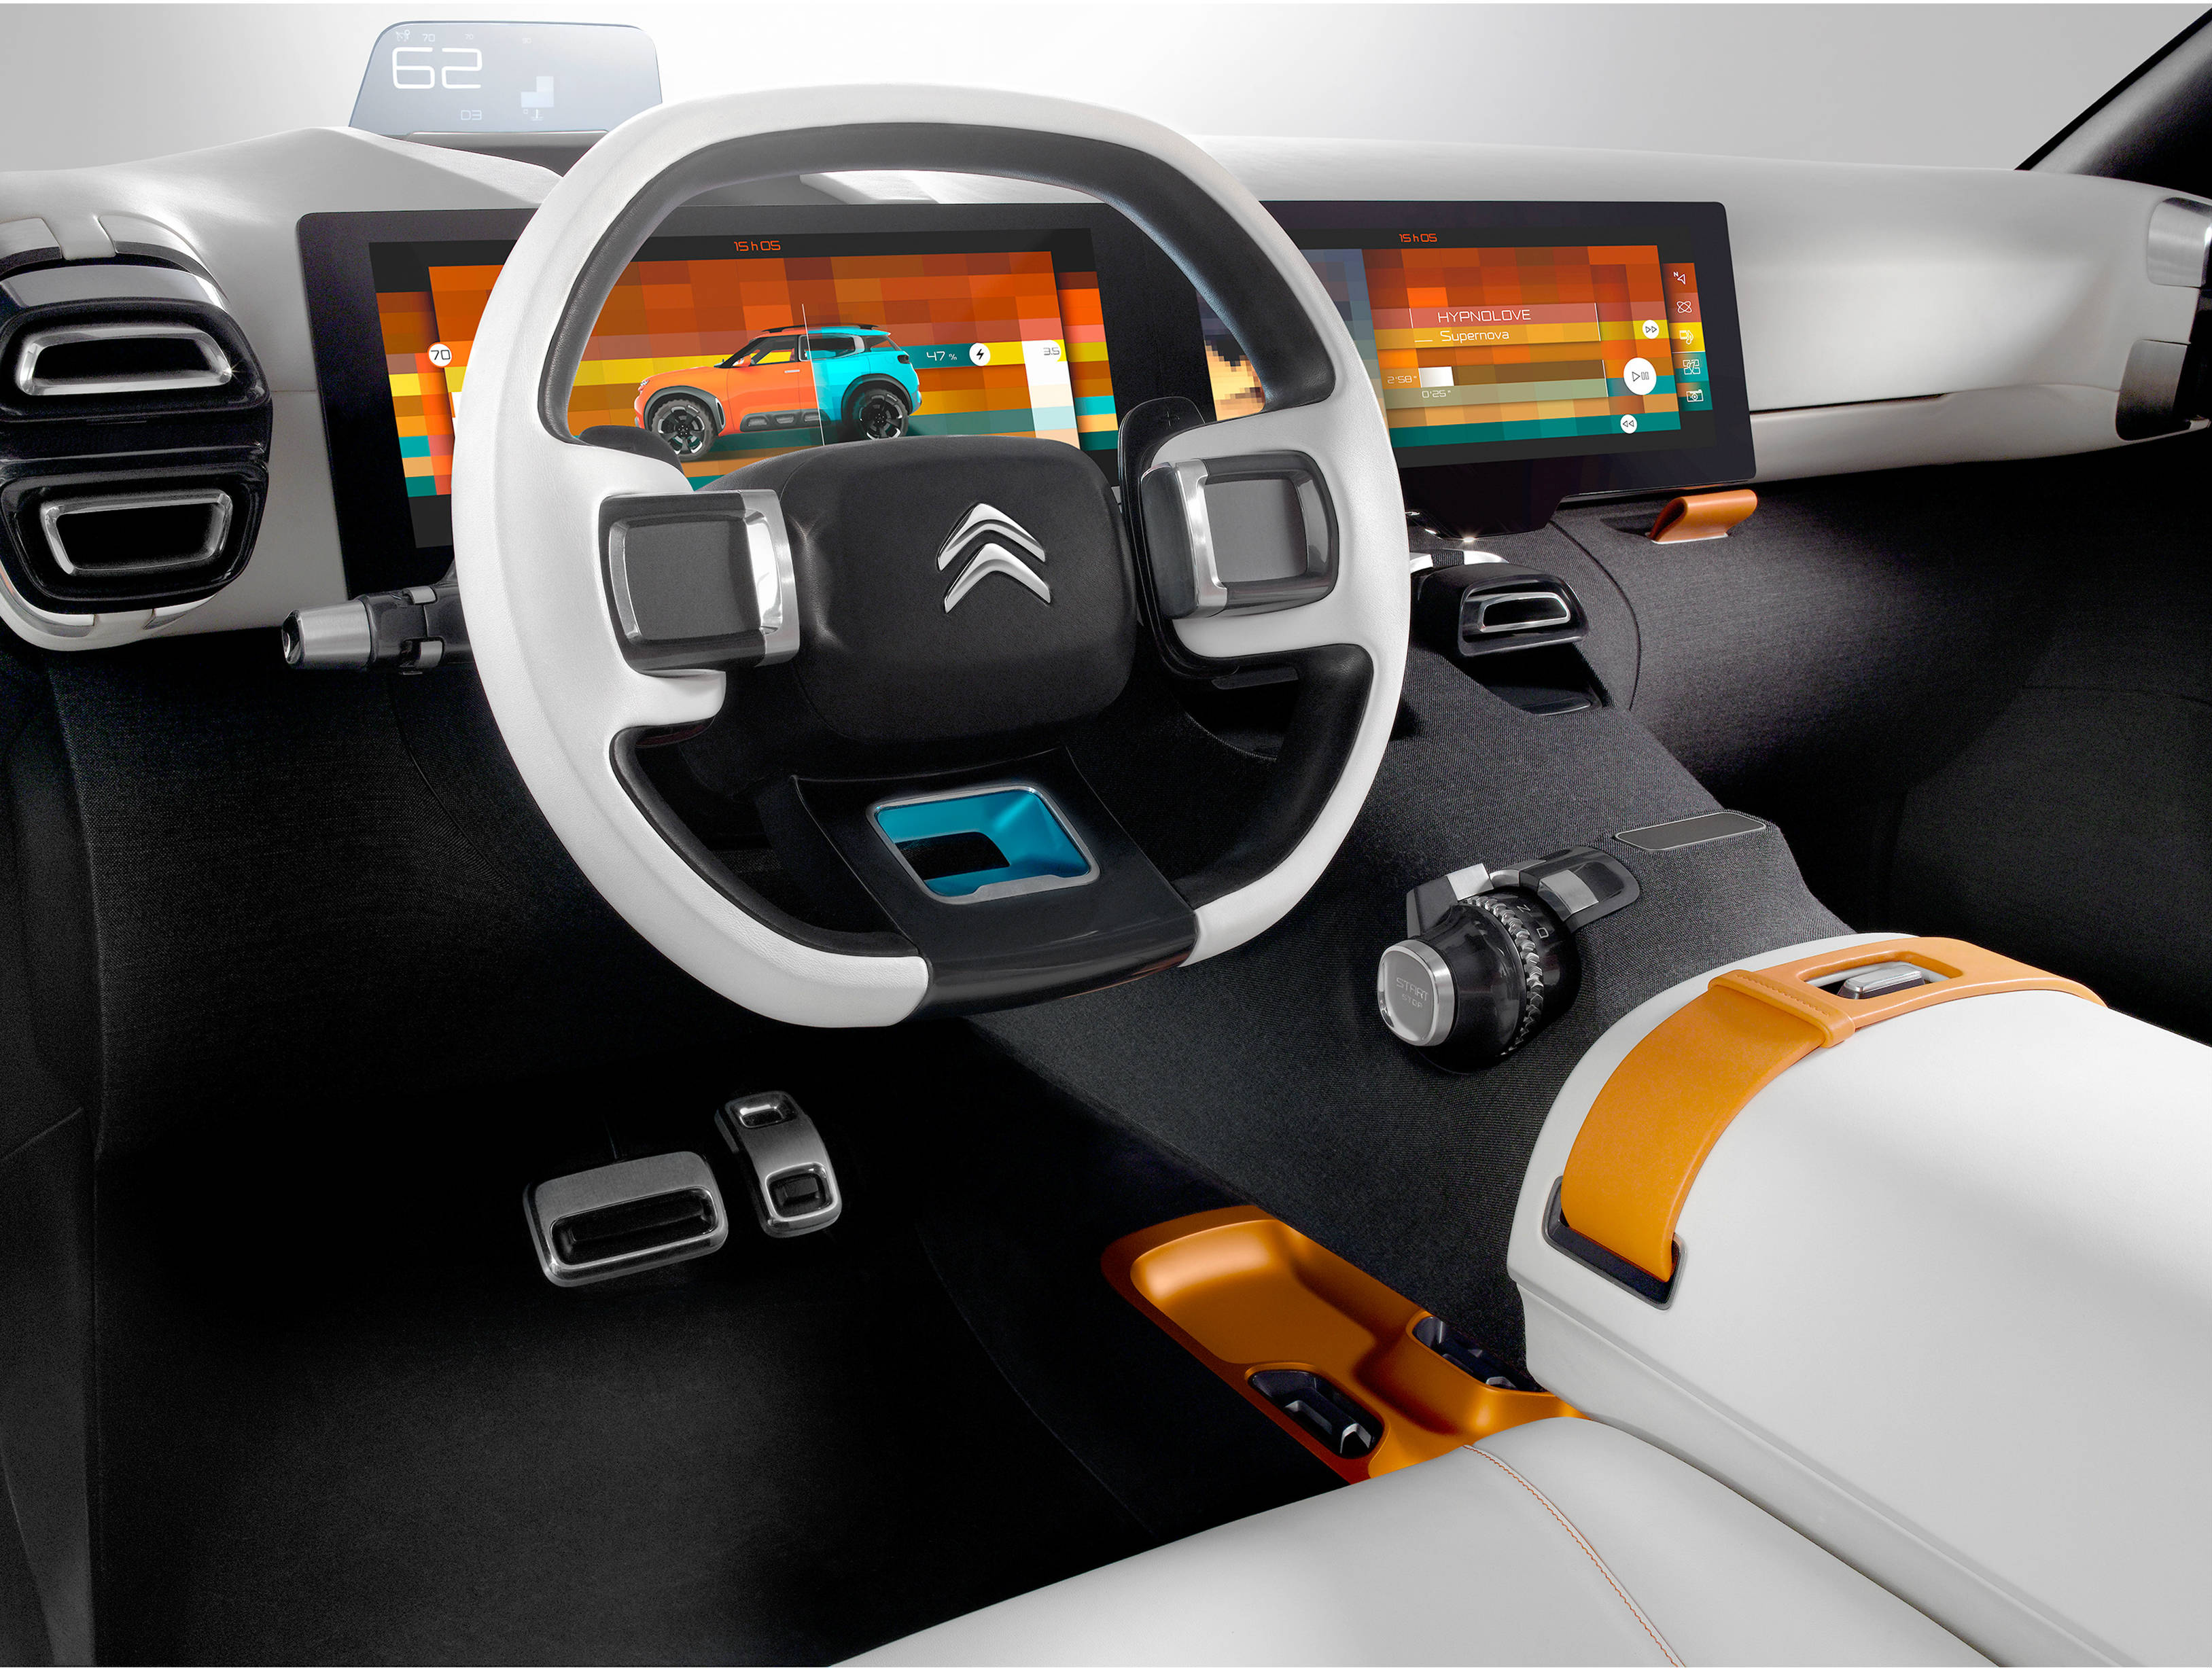 Citroen Airdream concept car